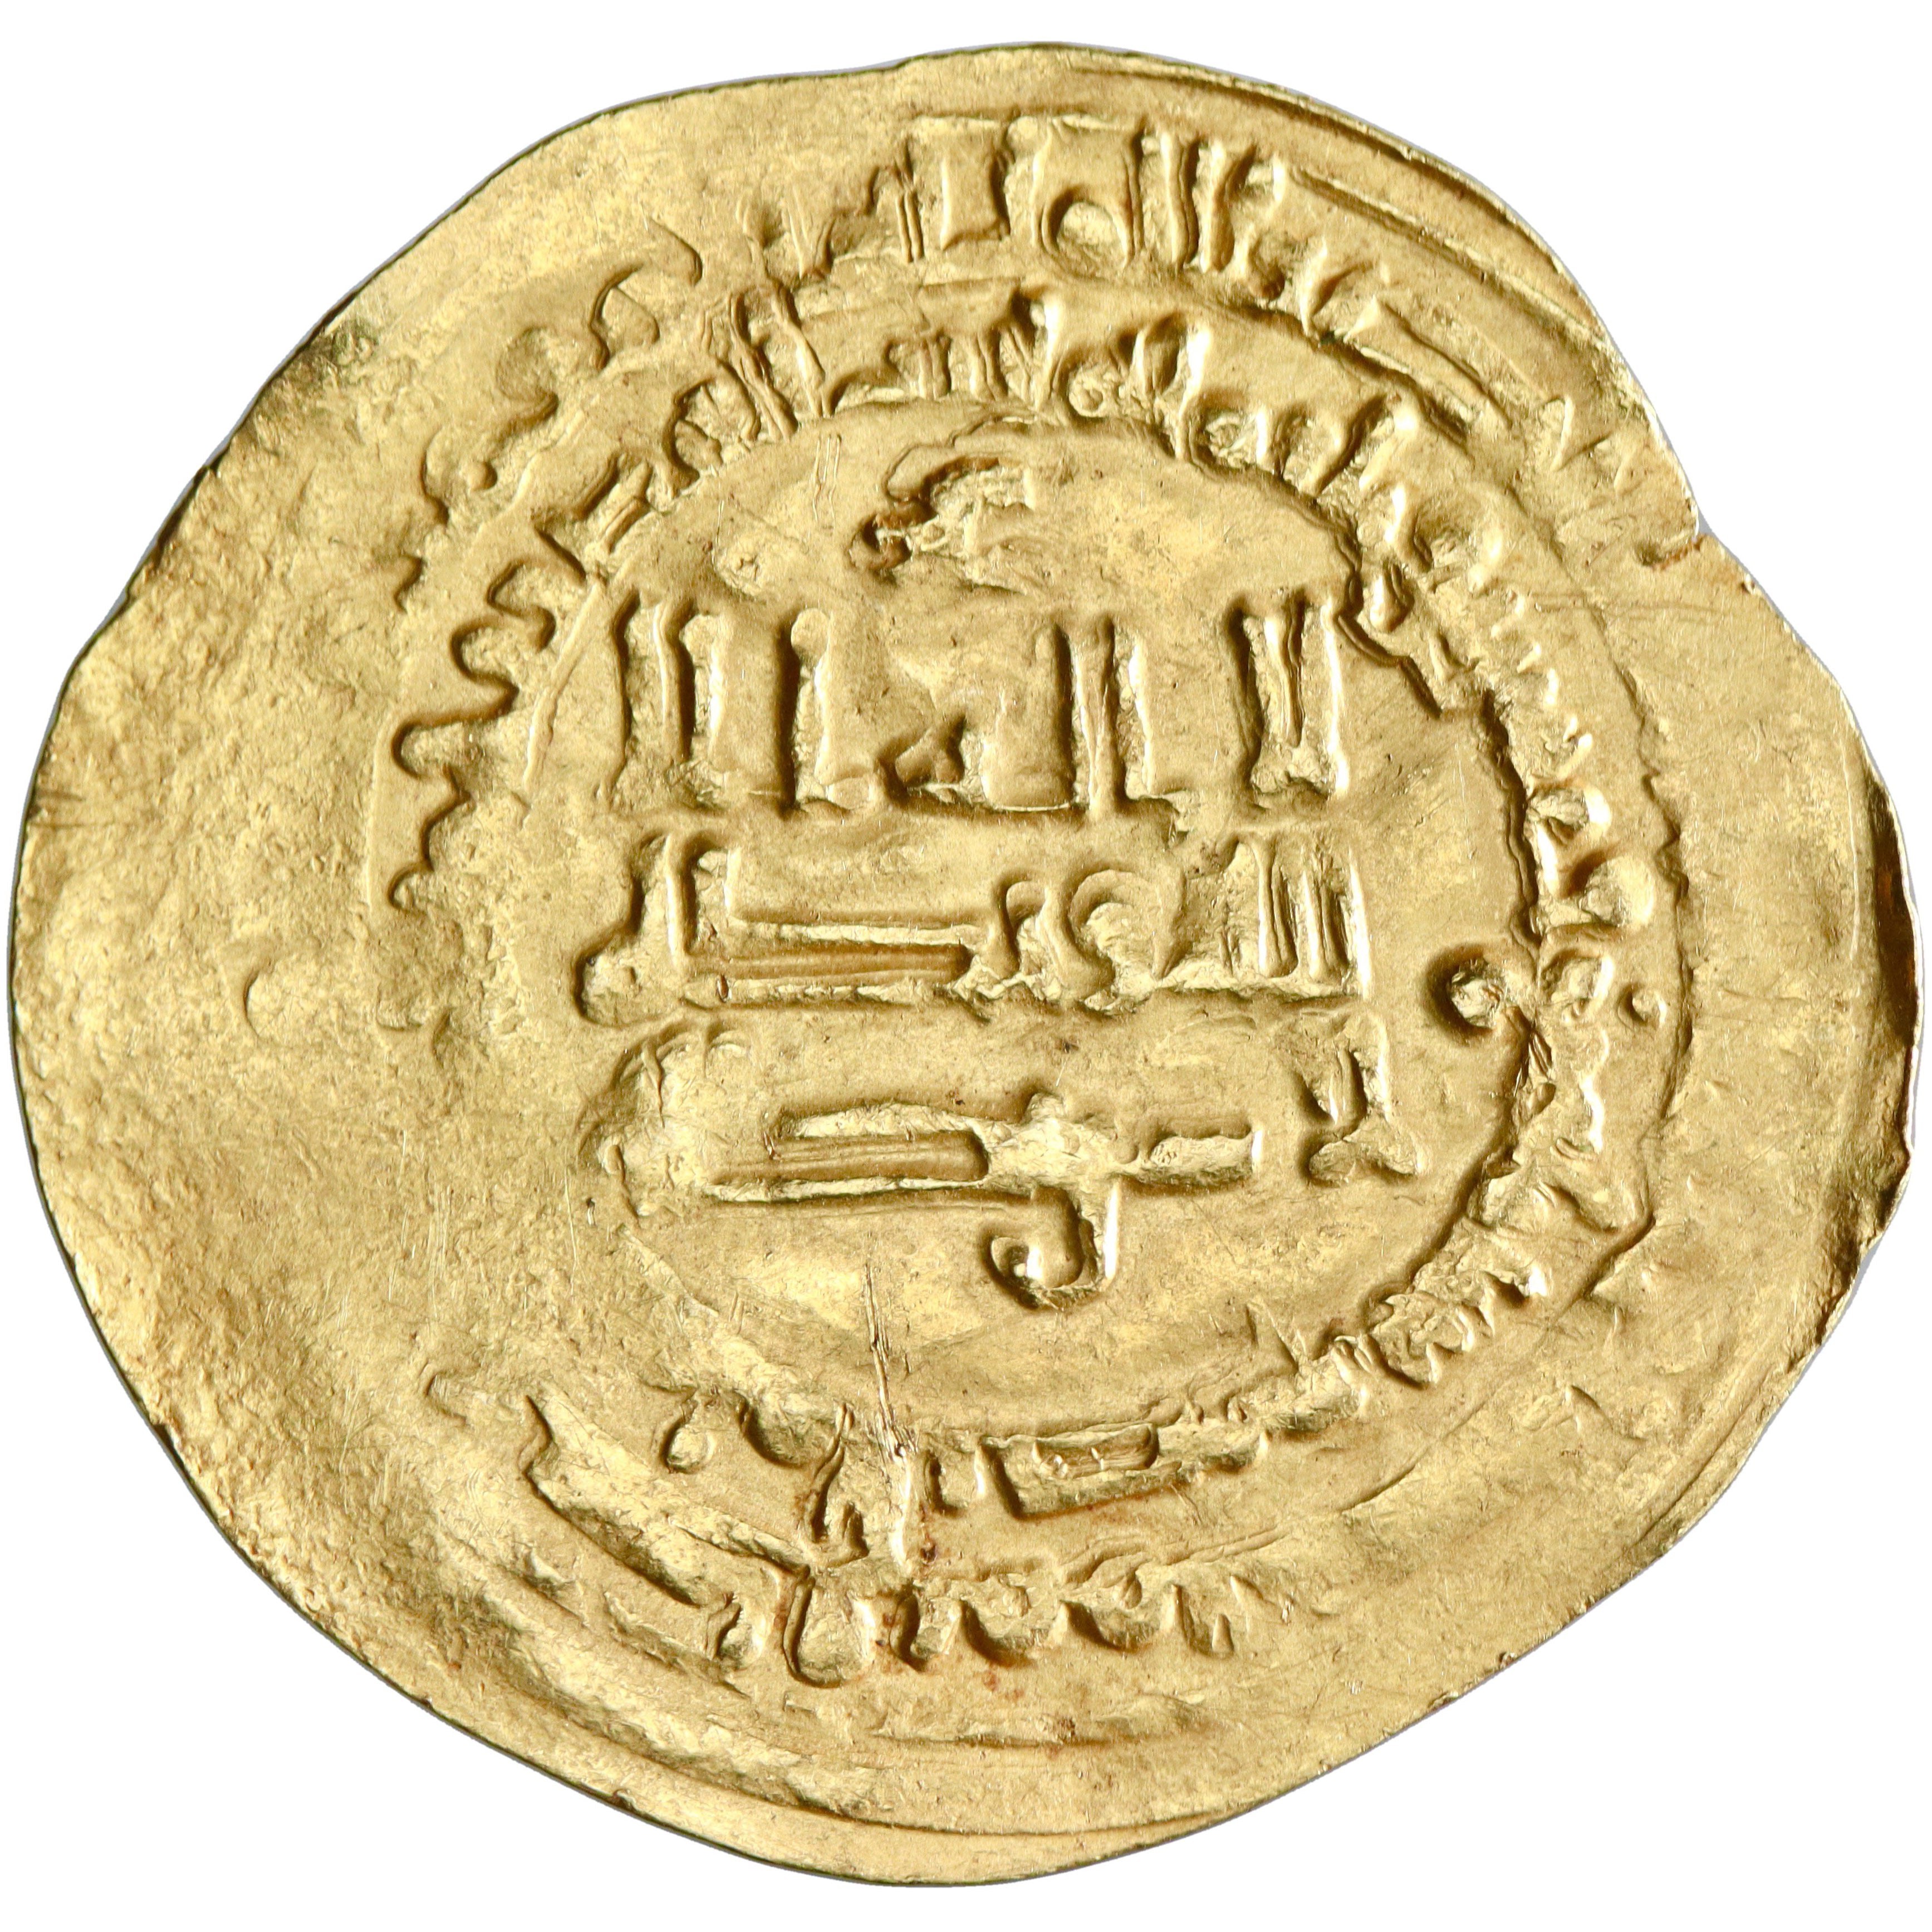 Abbasid, al-Radi billah, gold dinar, Mah al-Basra mint, AH 324